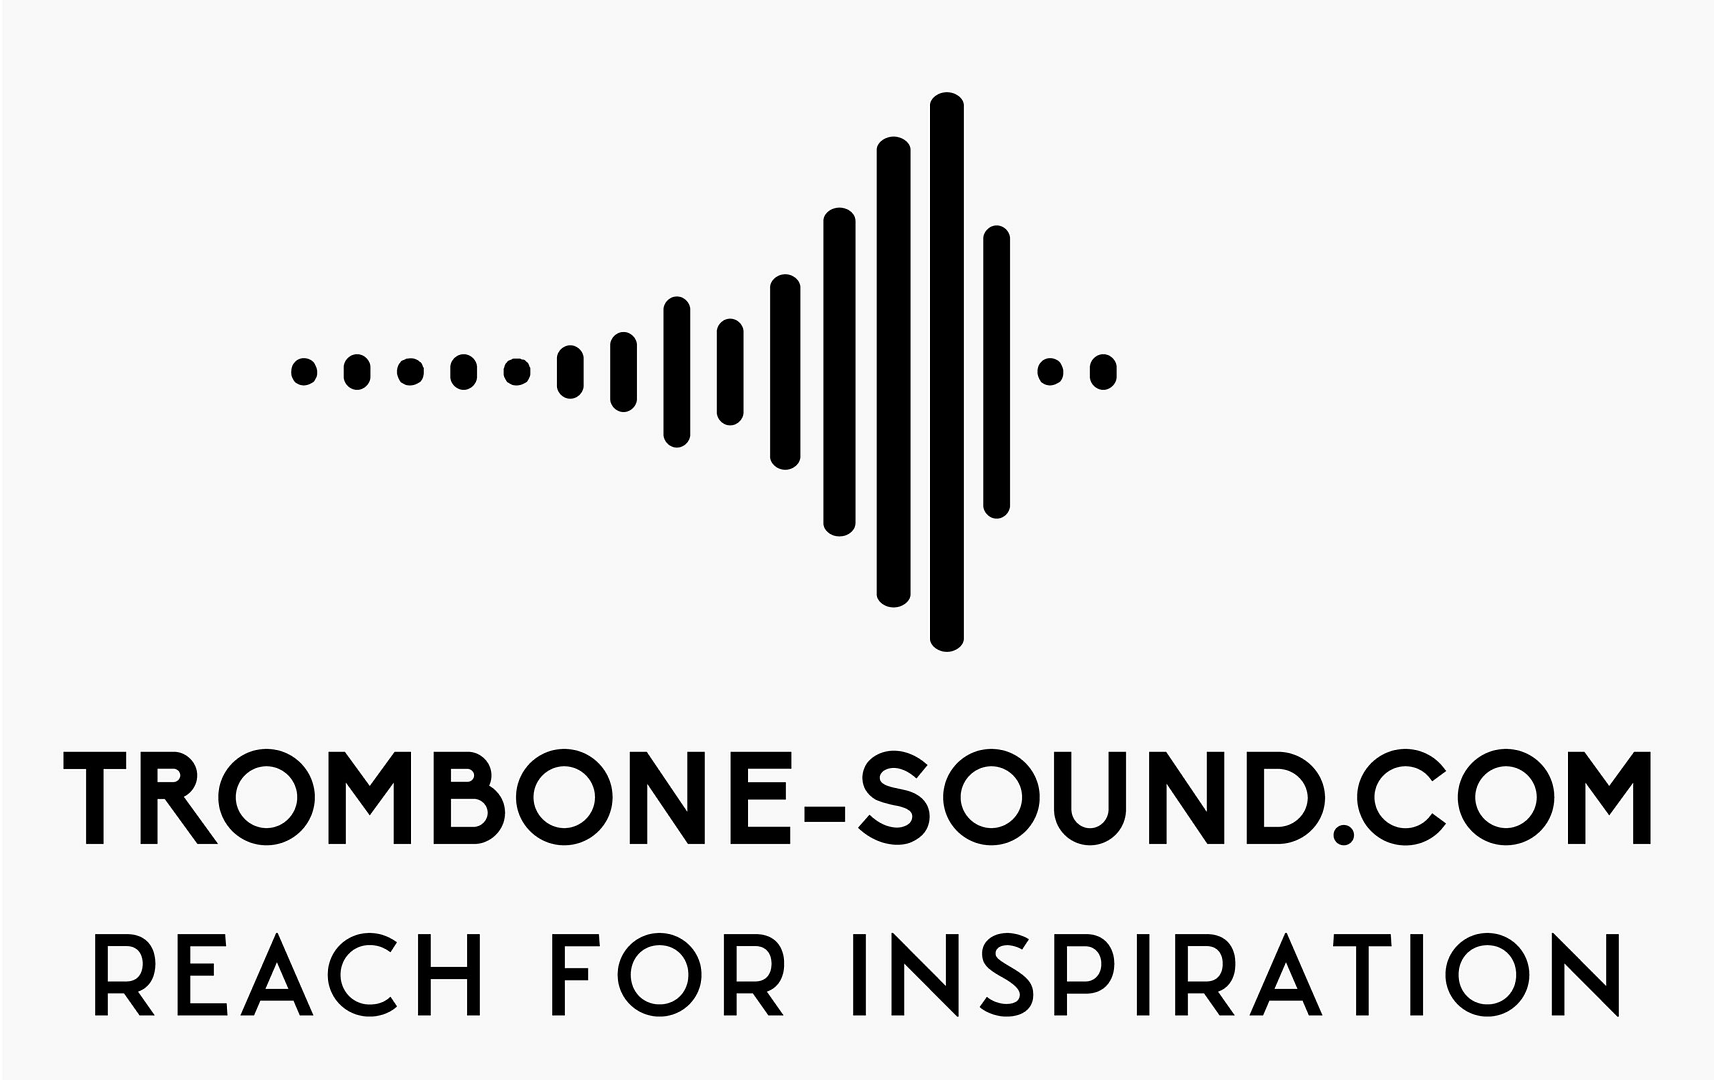 Trombone-Sound.com